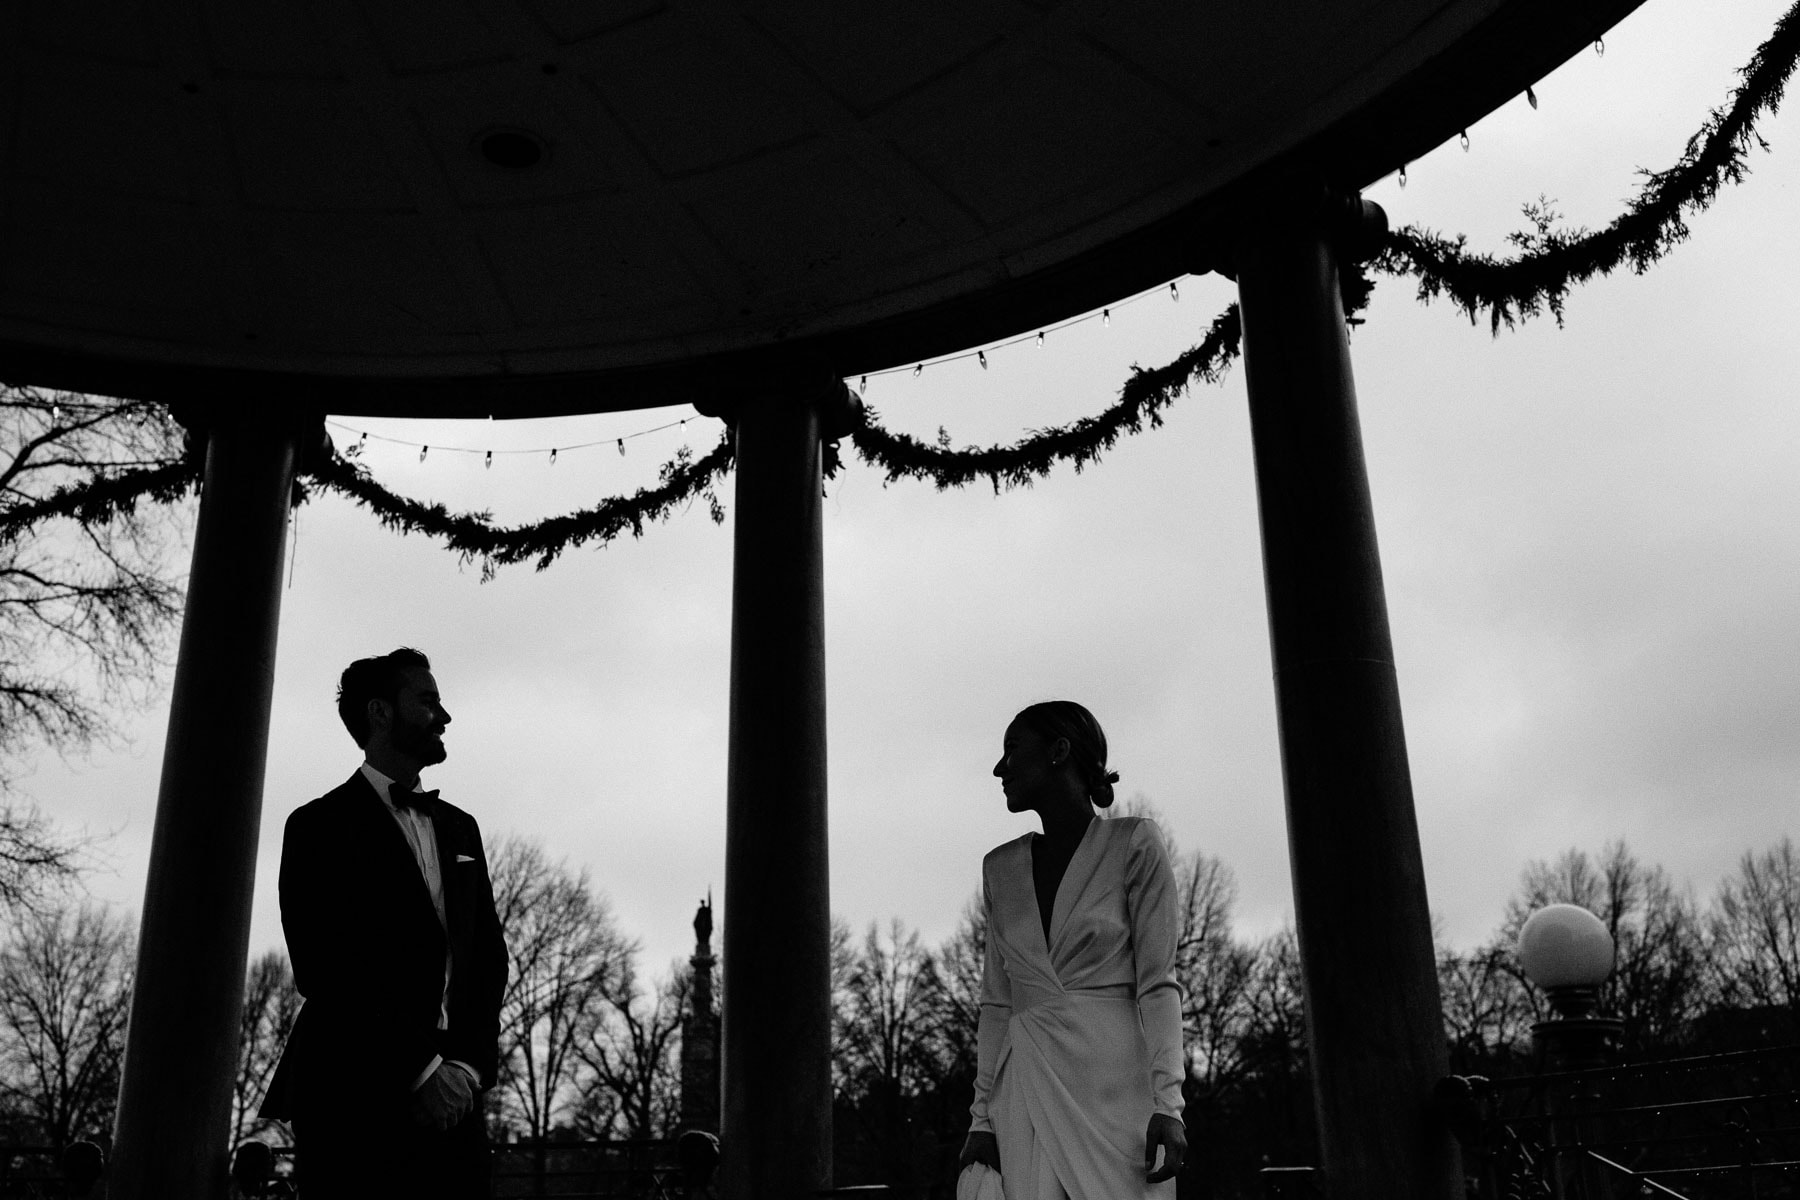 rainy wedding portraits in Boston Common